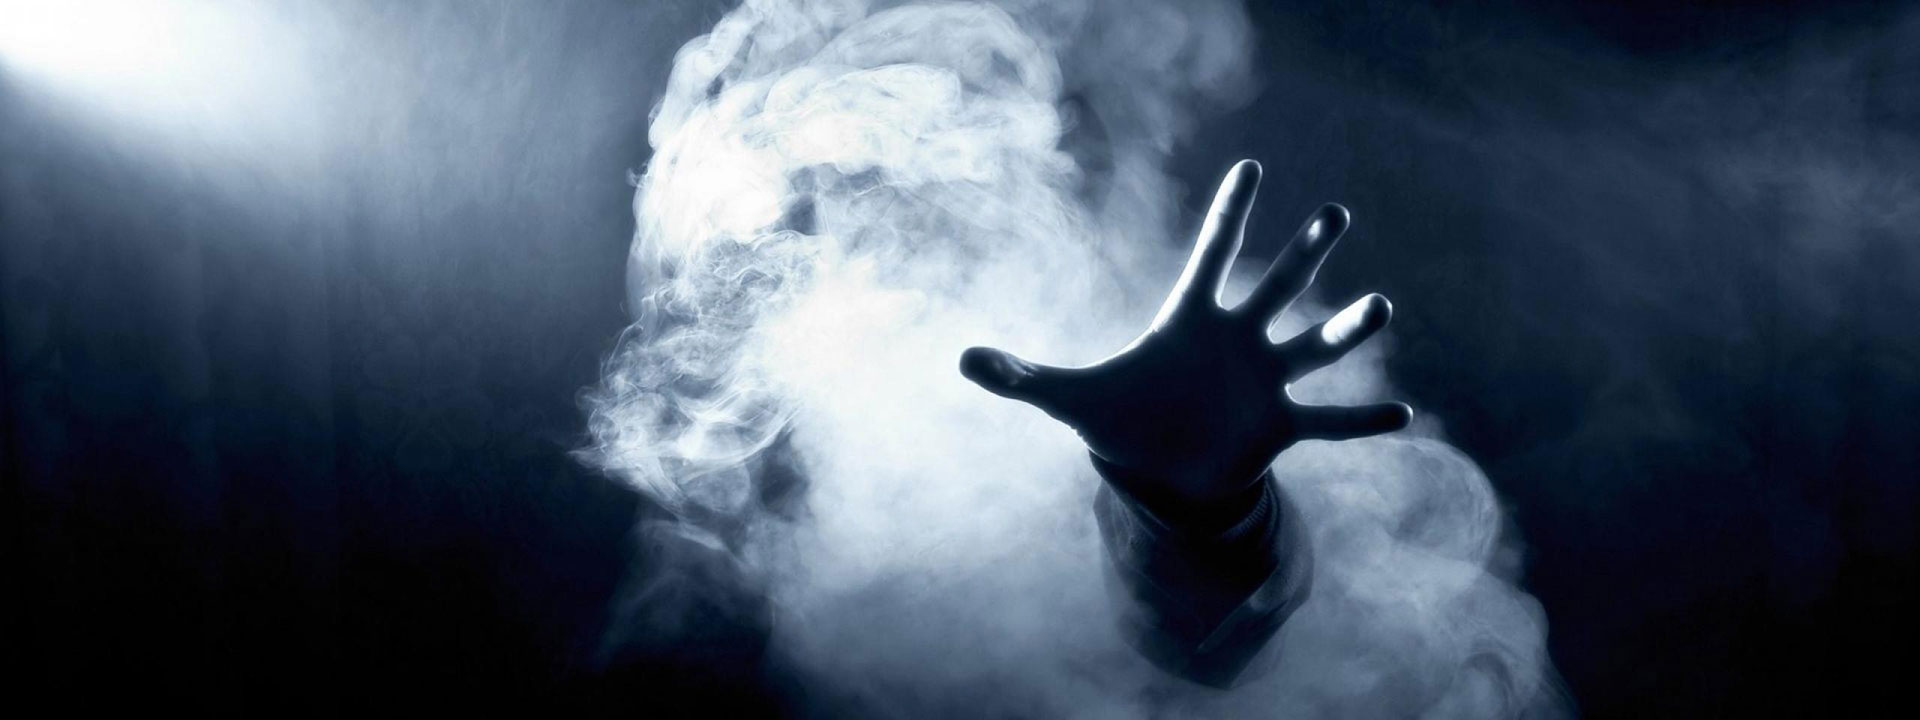 Mão fantasmagórica - Imagem do Tarrasque na Bota 20 - A mina perdida de Phandelver - Episódio 20 - O Espírito de Ágatha